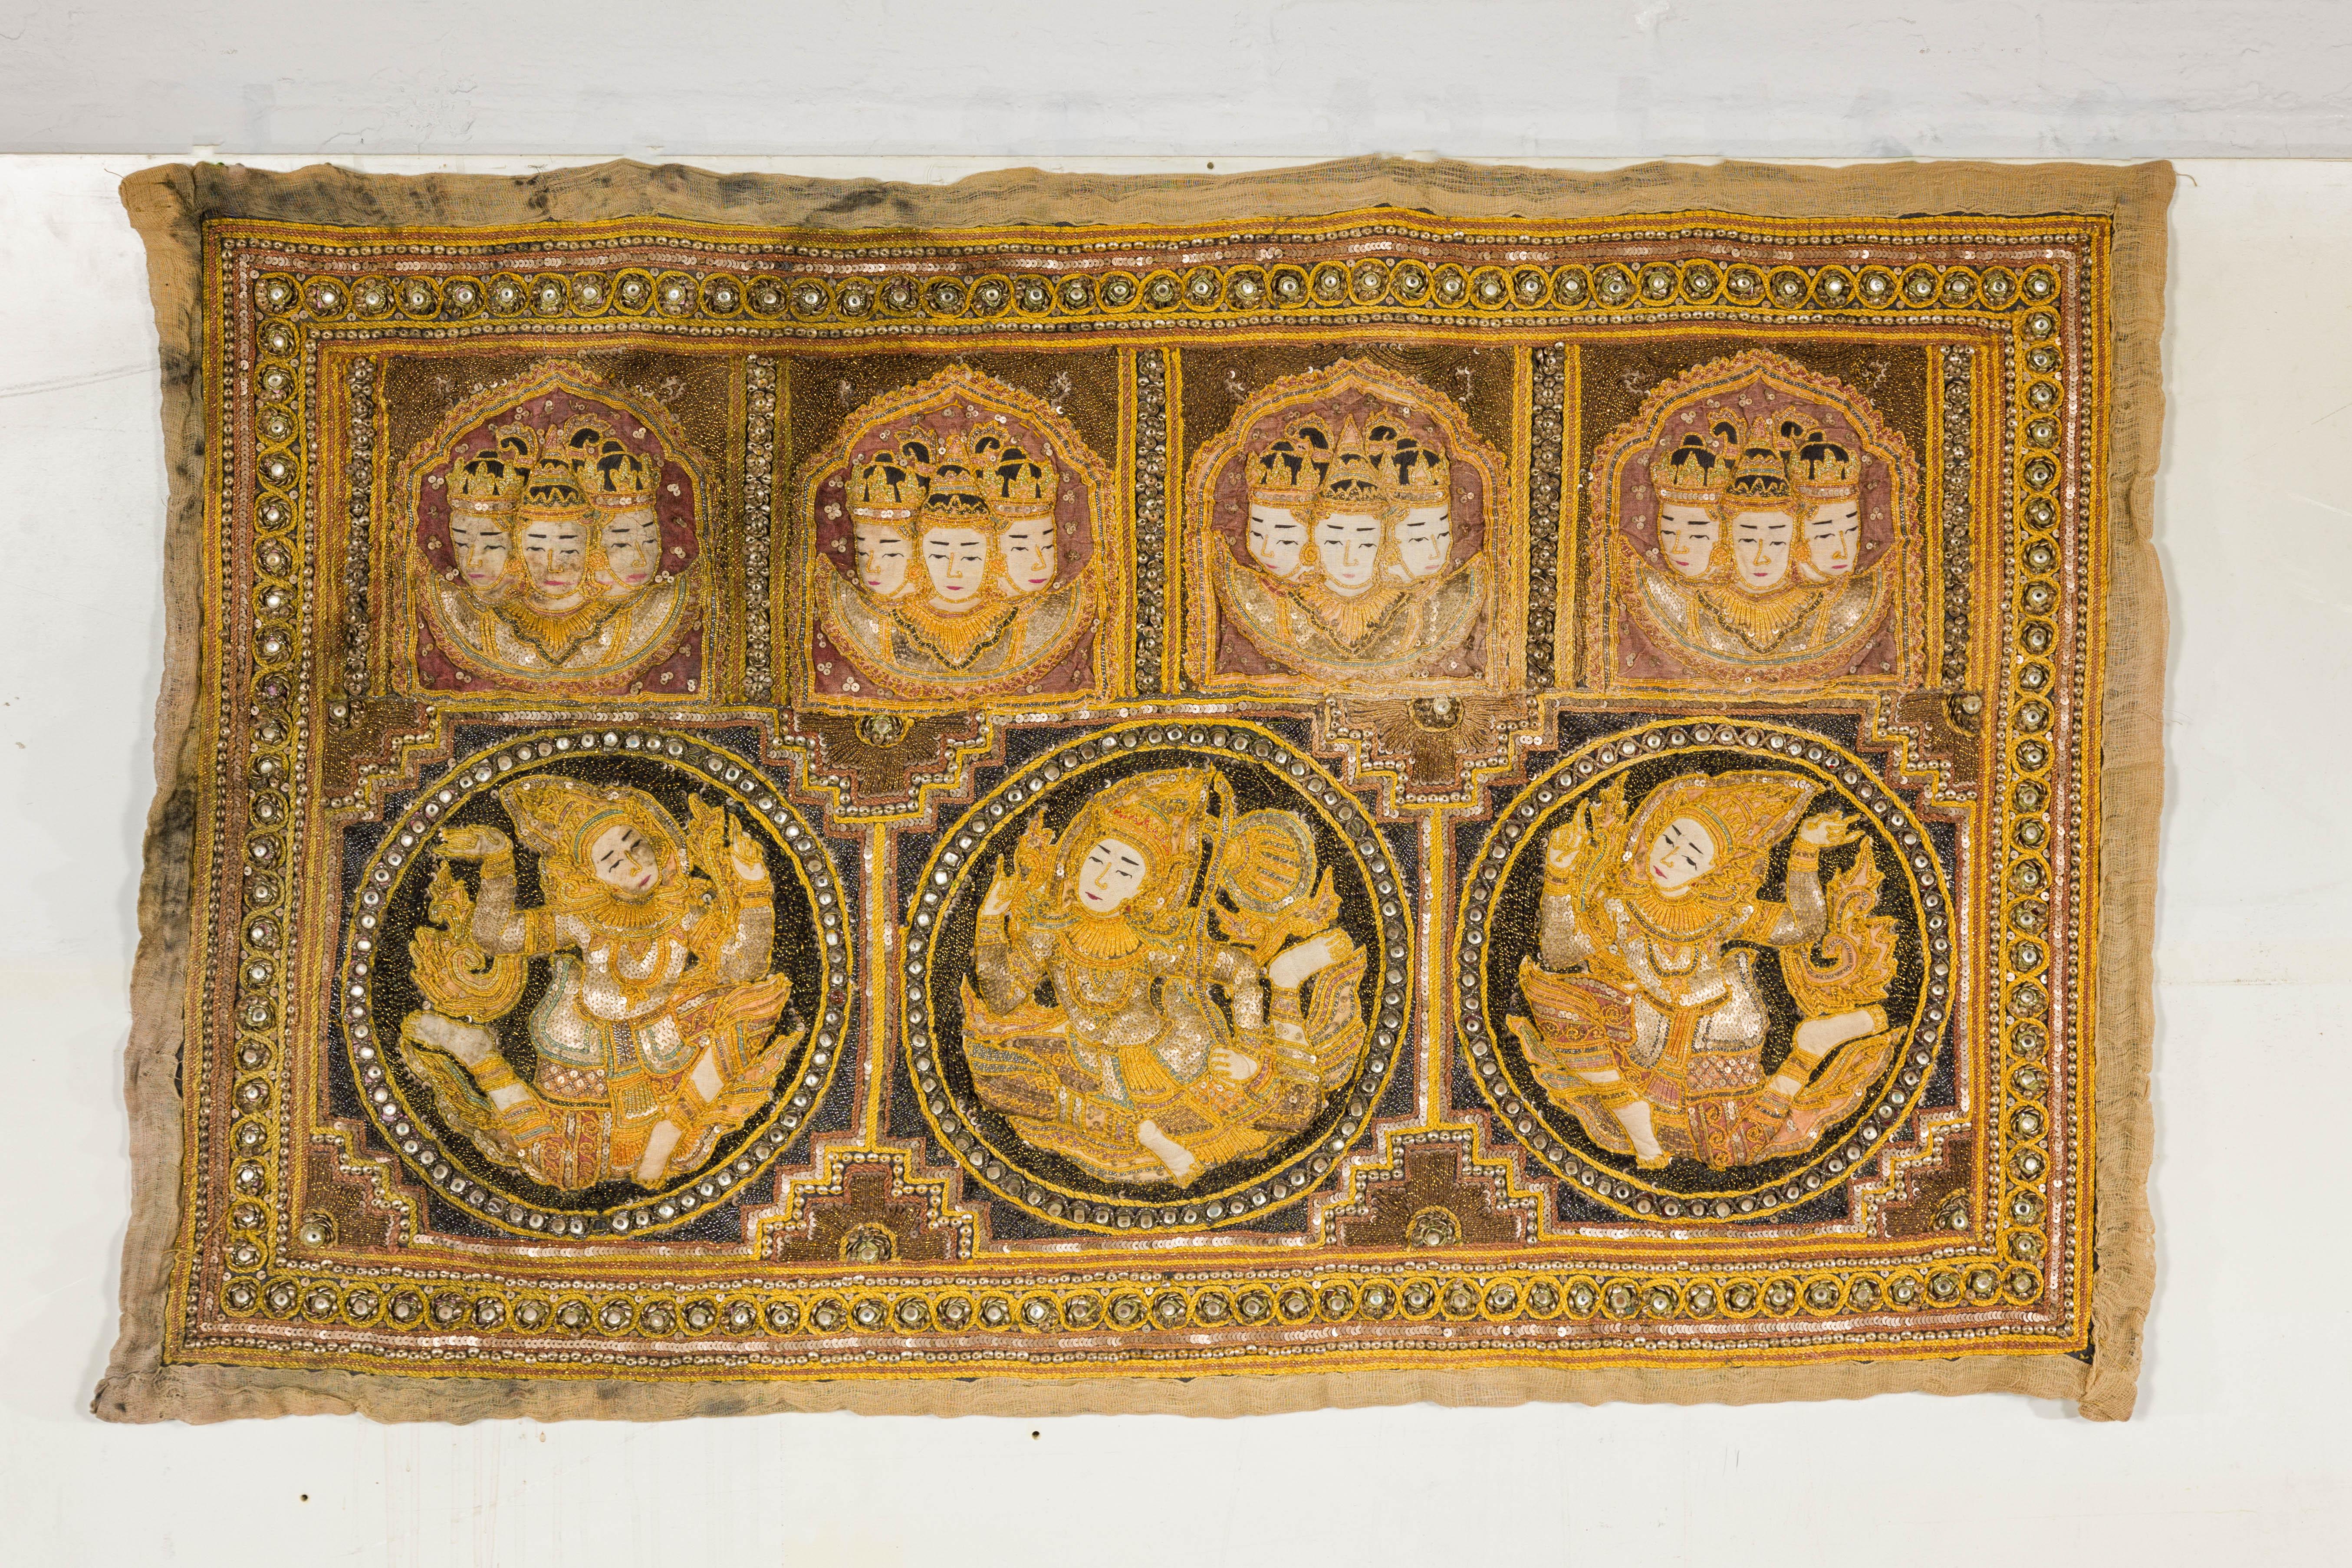 Tapisserie birmane Kalaga du XIXe siècle, ornée de pierres, de paillettes et de fils d'or. Cette tapisserie birmane Kalaga du XIXe siècle est une pièce époustouflante du patrimoine culturel, qui présente un décor orné de pierres, de paillettes et de